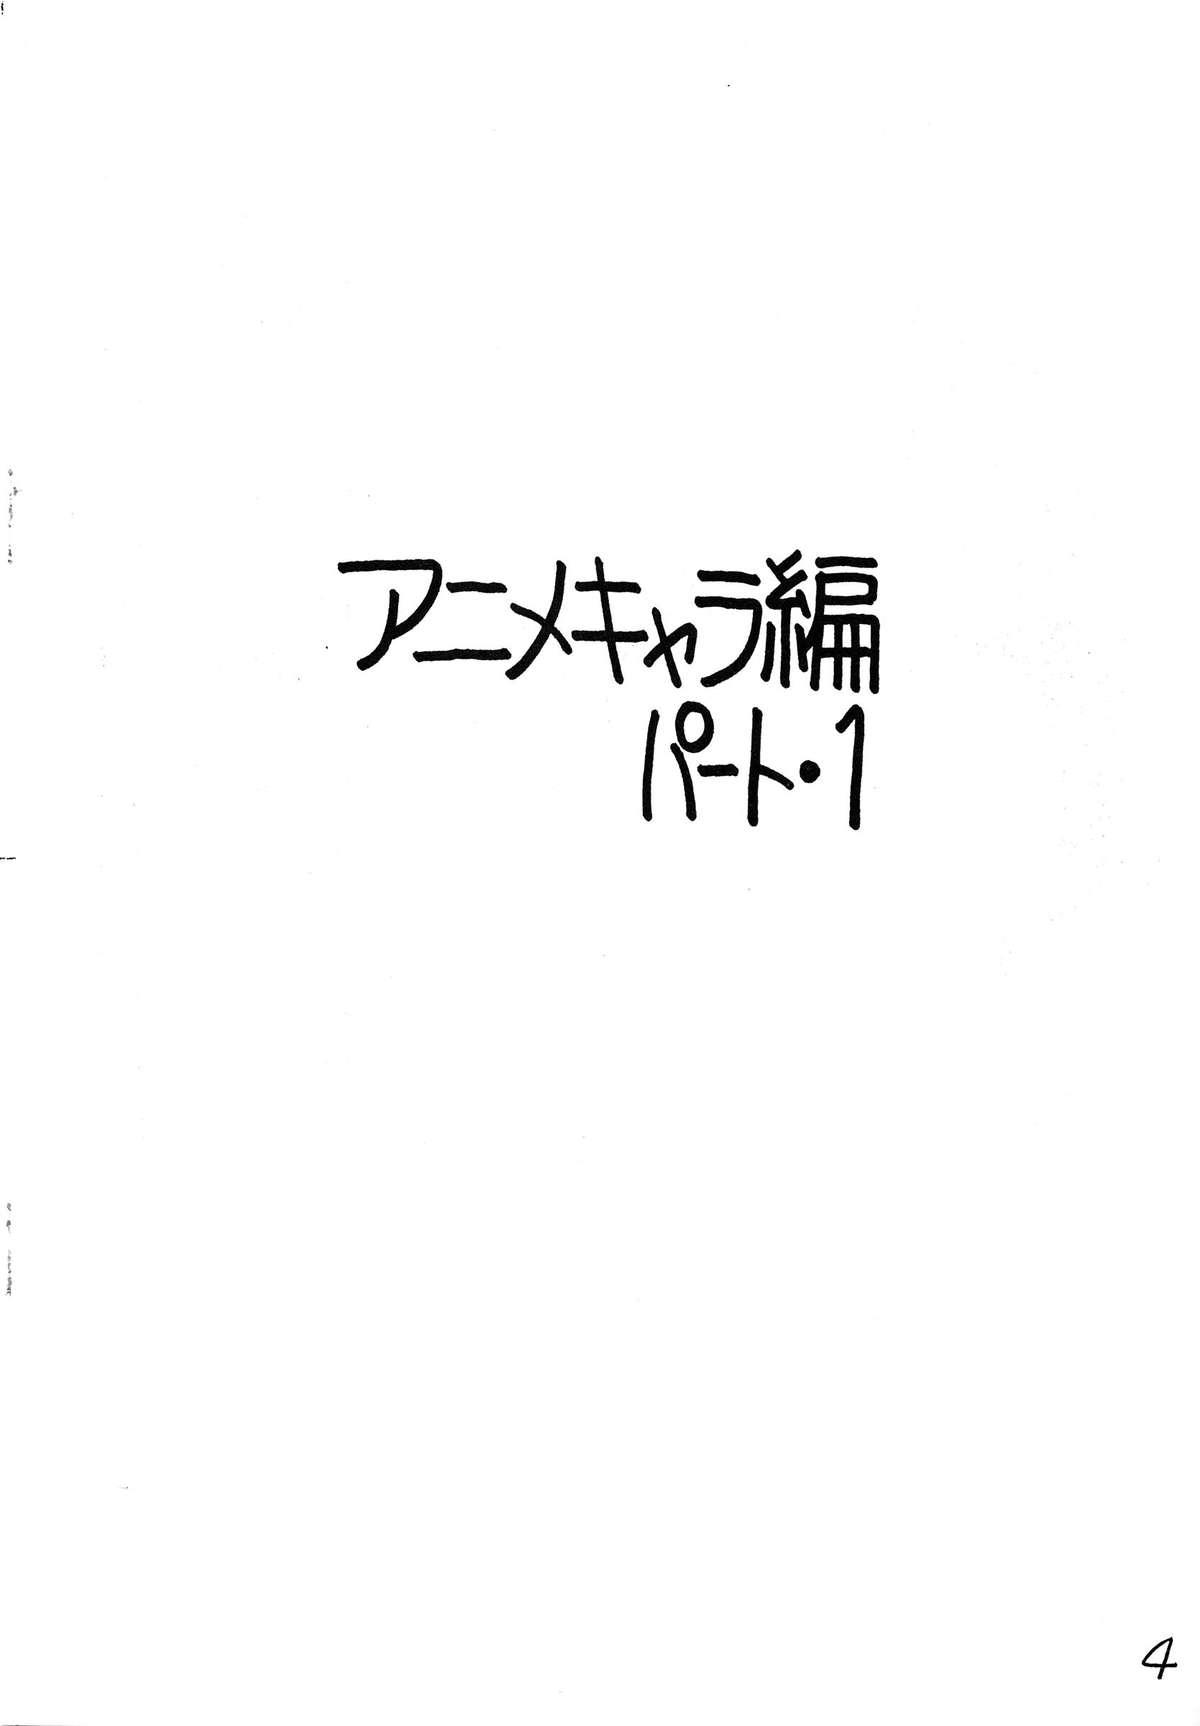 Mallu Gyakuten Juppatsuman - Urusei yatsura Creamy mami Genmu senki leda Plawres sanshiro Dance - Page 4